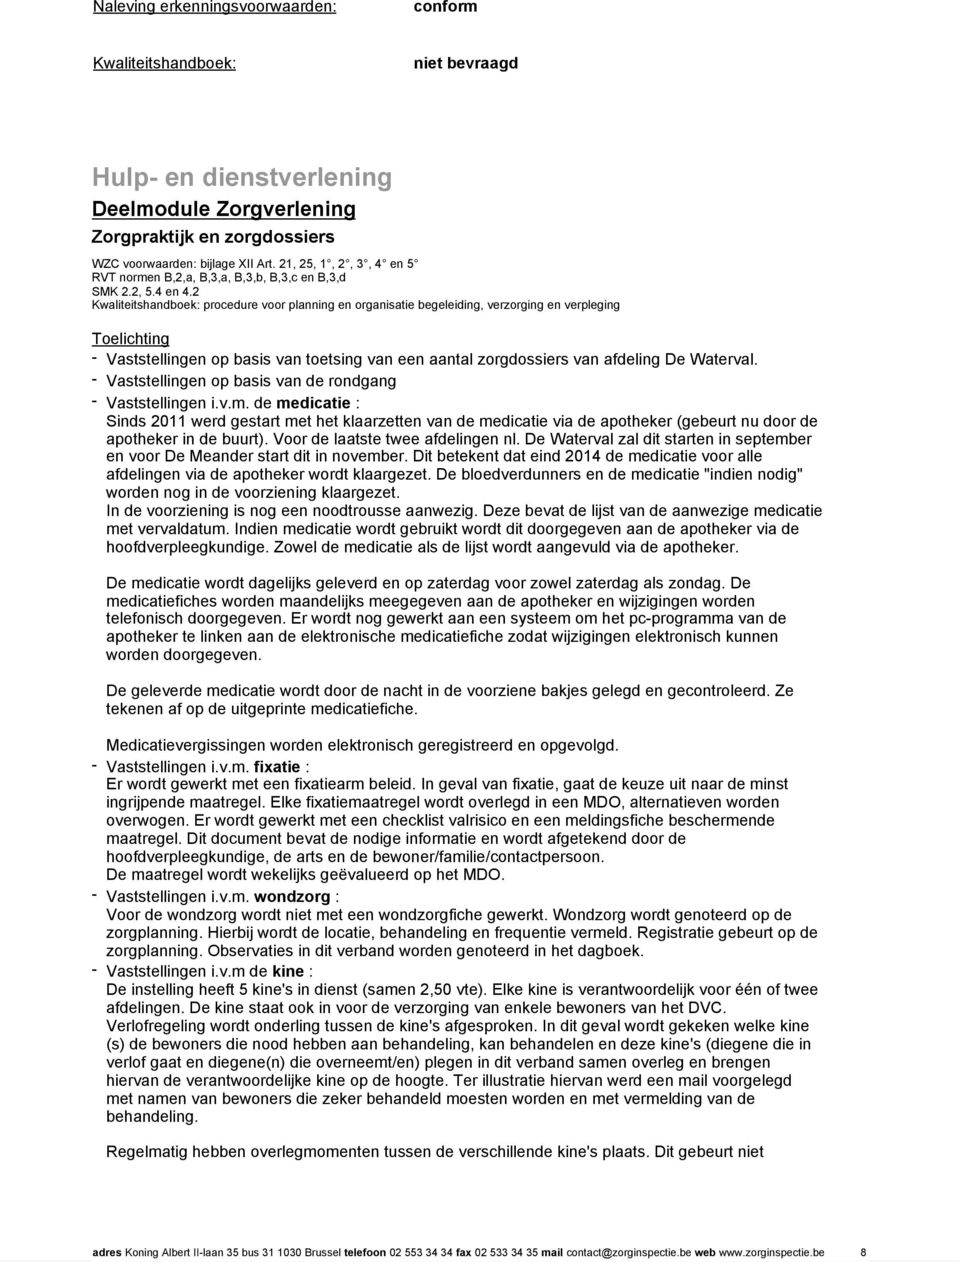 2 Kwaliteitshandboek: procedure voor planning en organisatie begeleiding, verzorging en verpleging - Vaststellingen op basis van toetsing van een aantal zorgdossiers van afdeling De Waterval.